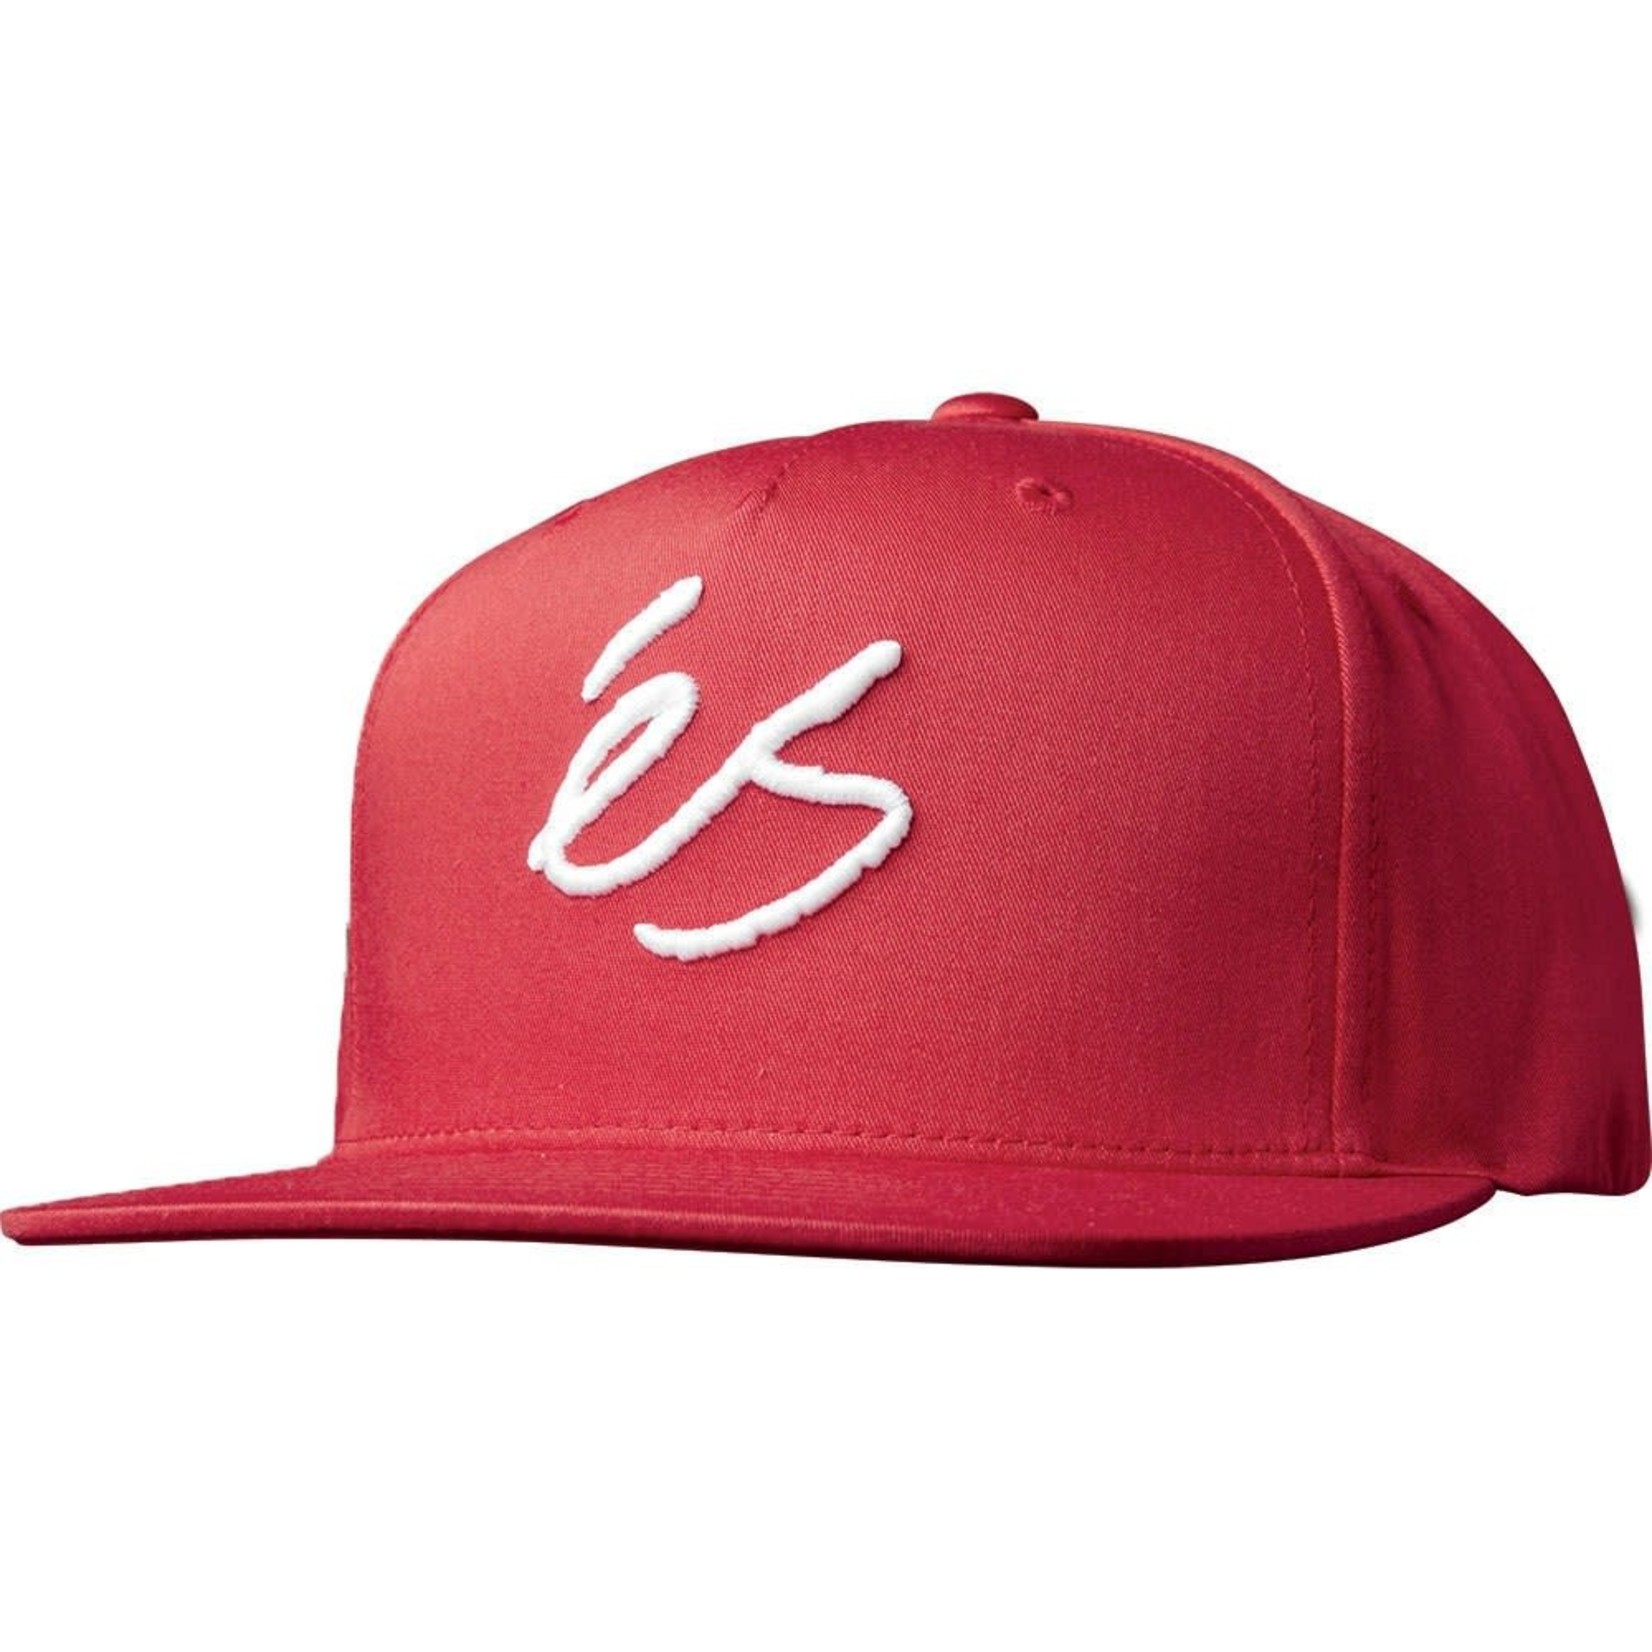 ES ES Script Red Snapback Hat